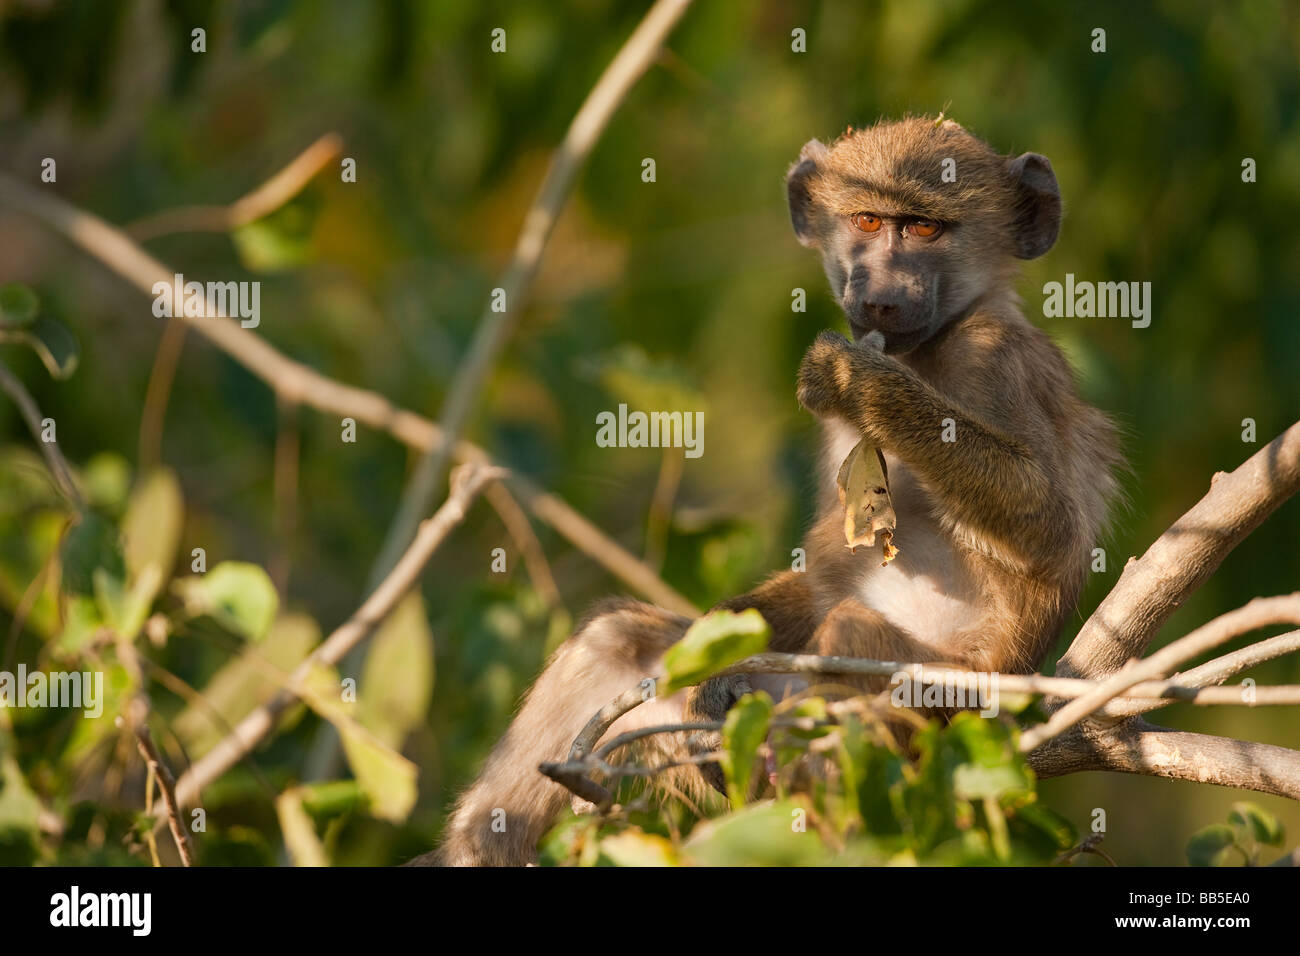 Carino africano espressiva spider monkey seduta nella struttura ad albero vicino accesa da morbida luce calda grandi occhi spalancati il contatto visivo e giocare con bastone Foto Stock